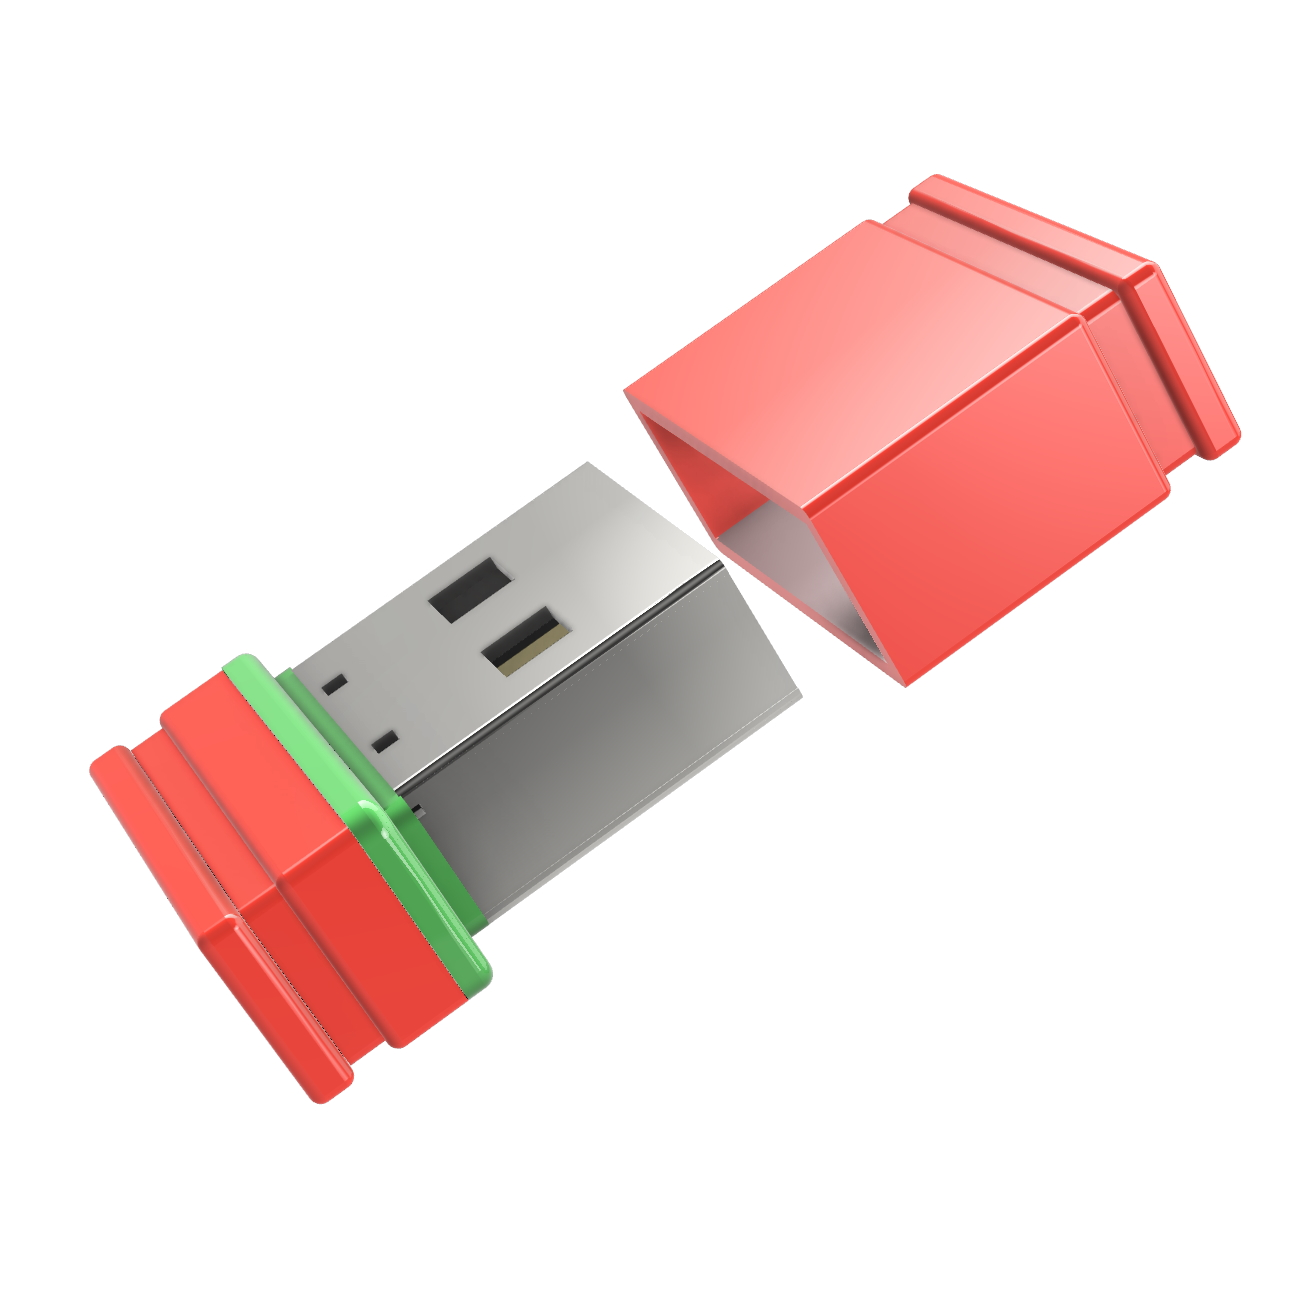 GERMANY (Rot/Grün, USB-Stick GB) 4 P1 ®ULTRA Mini USB